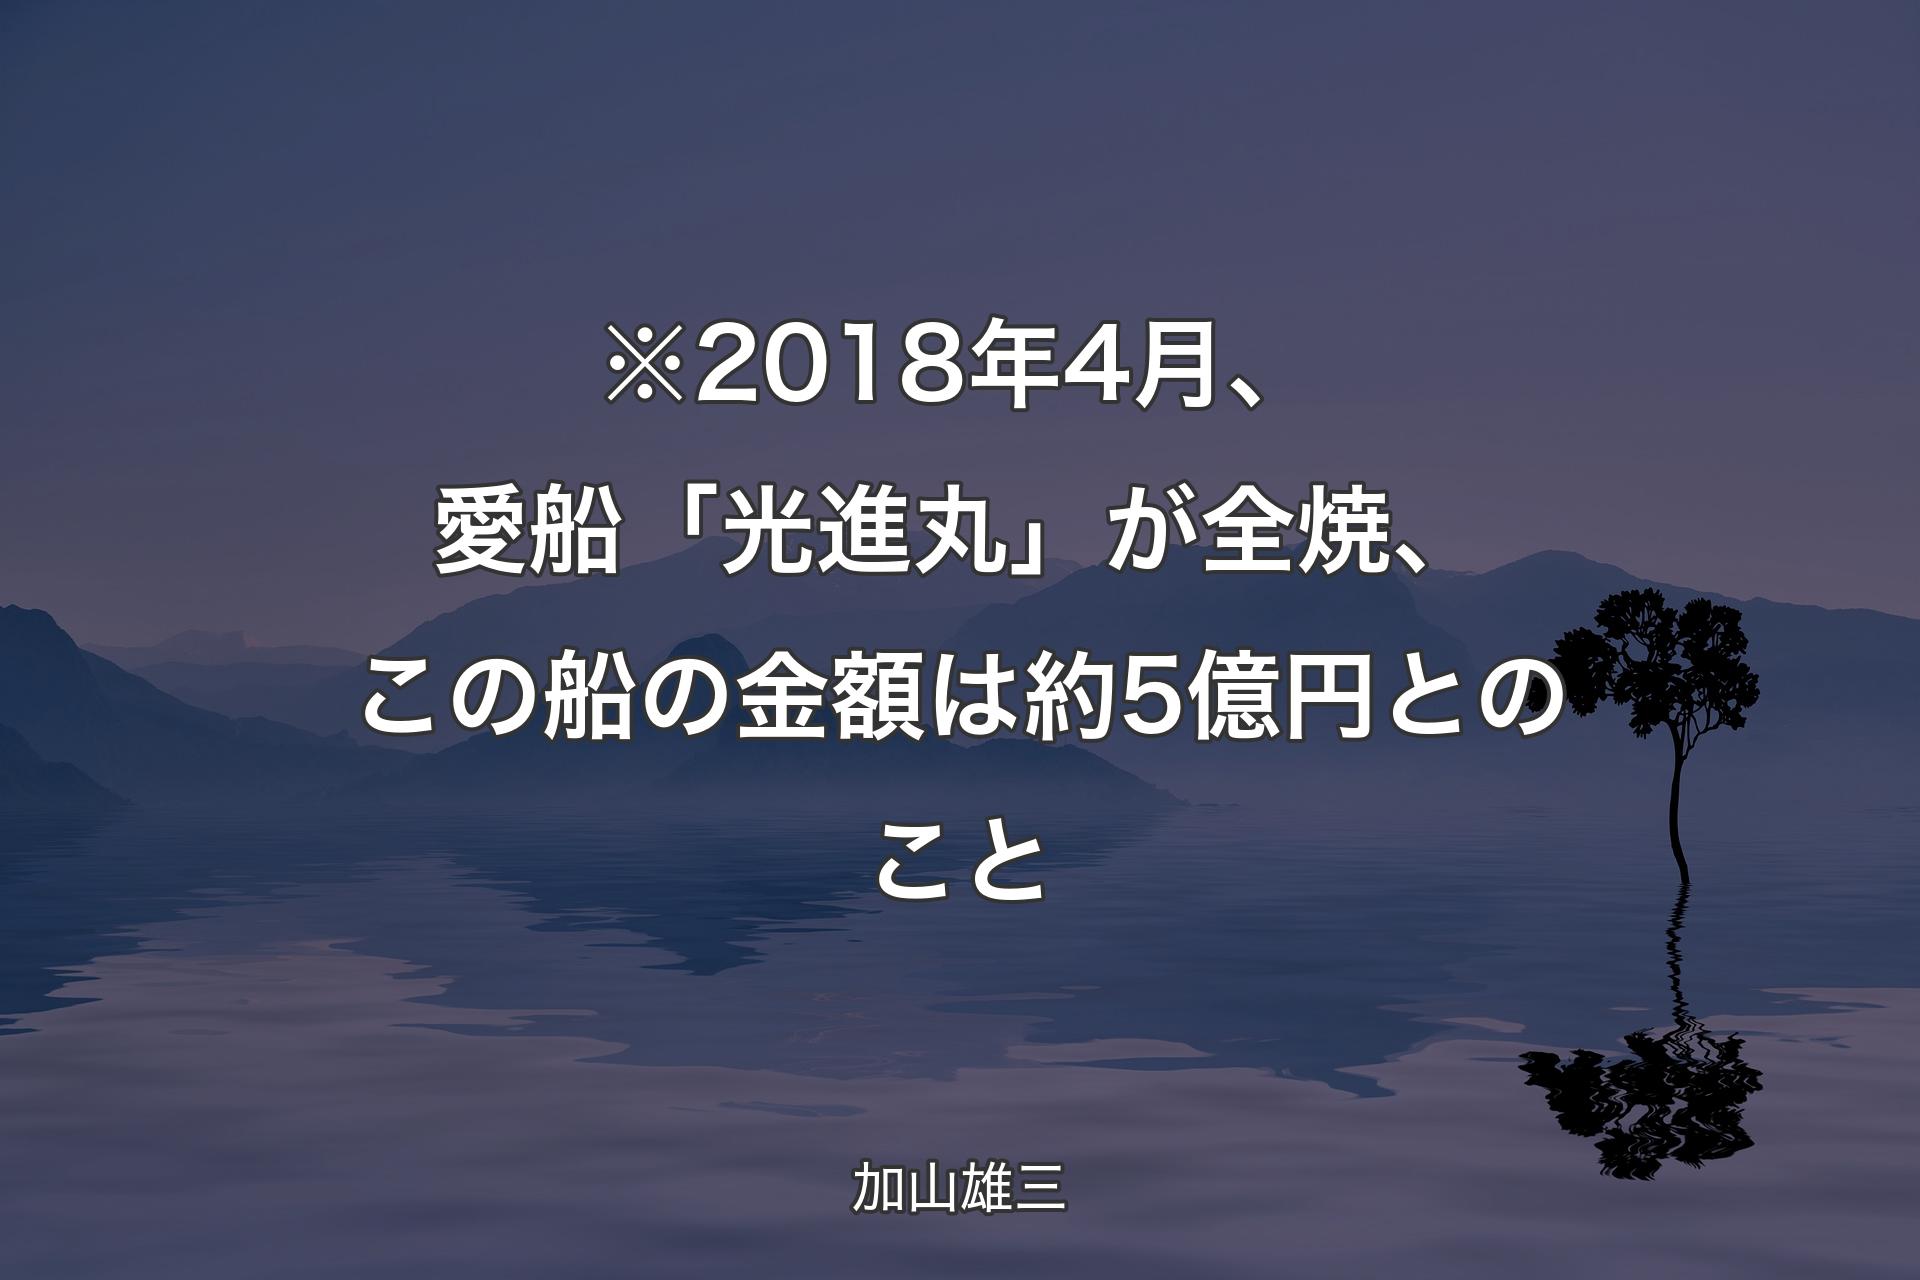 ※2018年4月、愛船「光進丸」が全焼、この船の金額は約5億円とのこと - 加山雄三